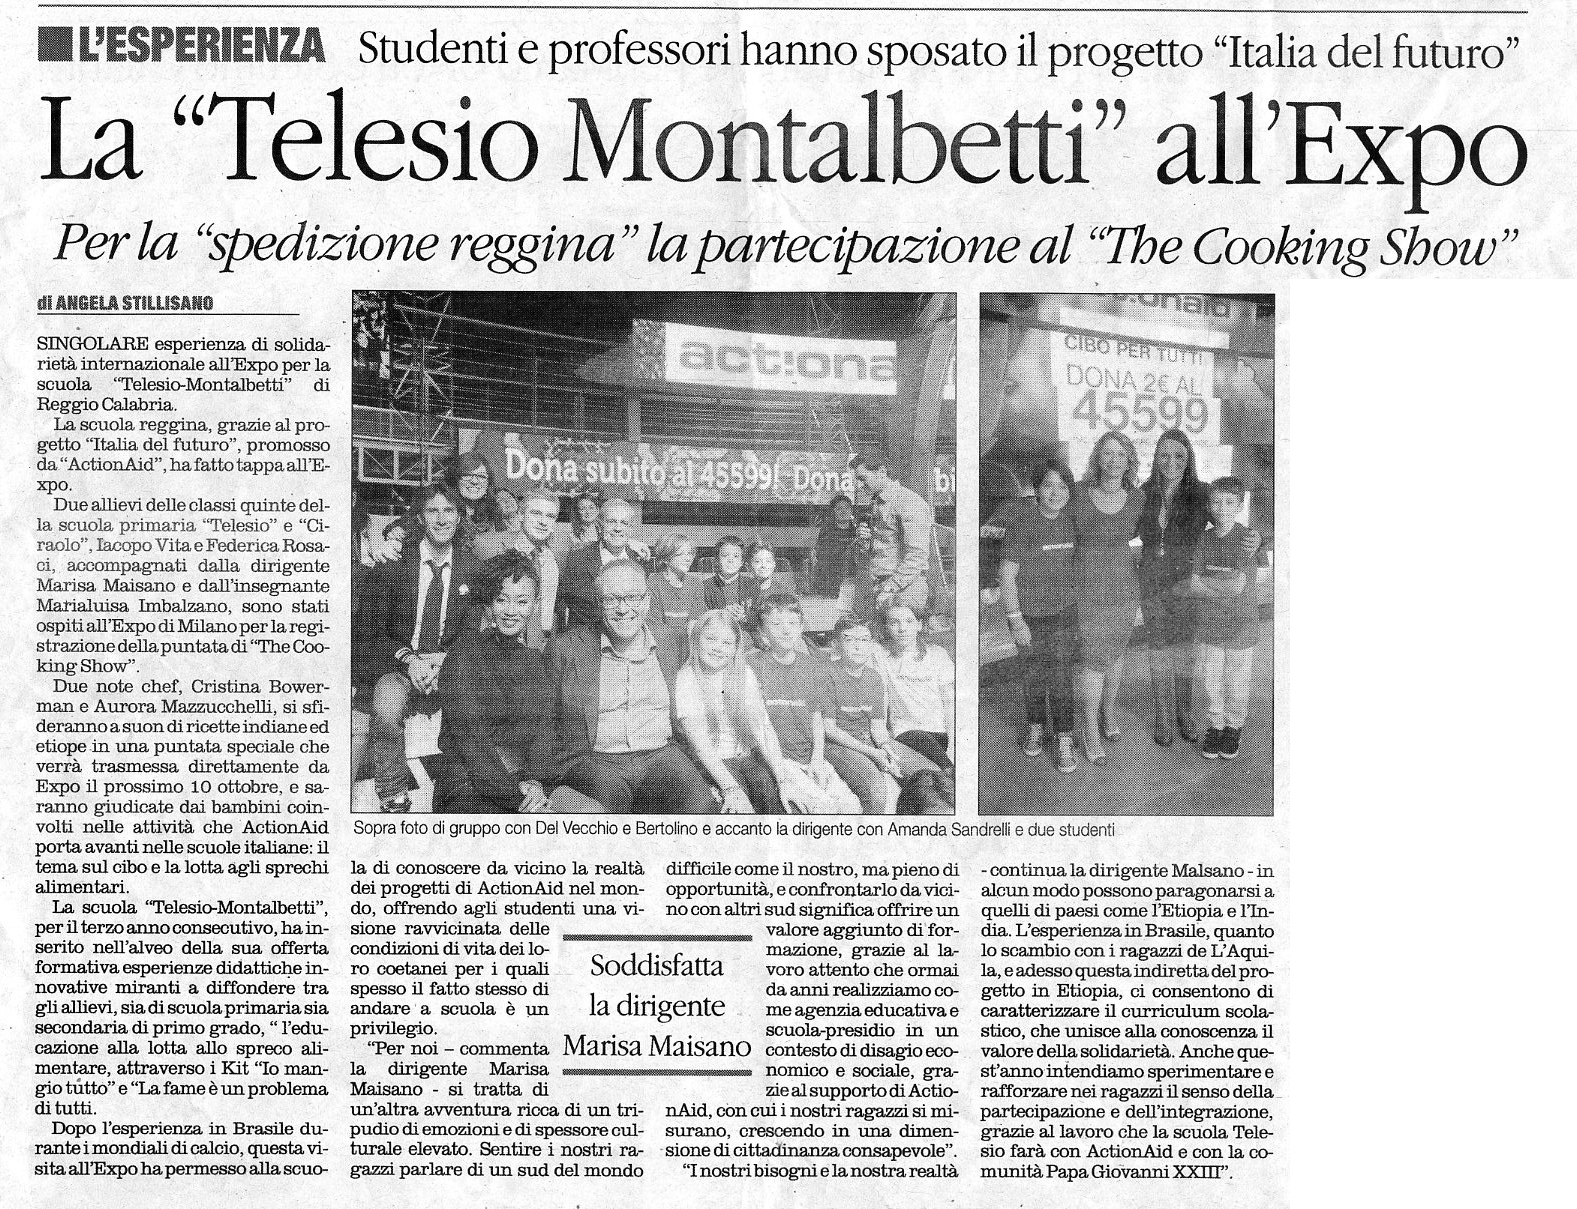 Rassegna Stampa 2015 Actionaid Primaria La Telesio Montalbetti allExpo